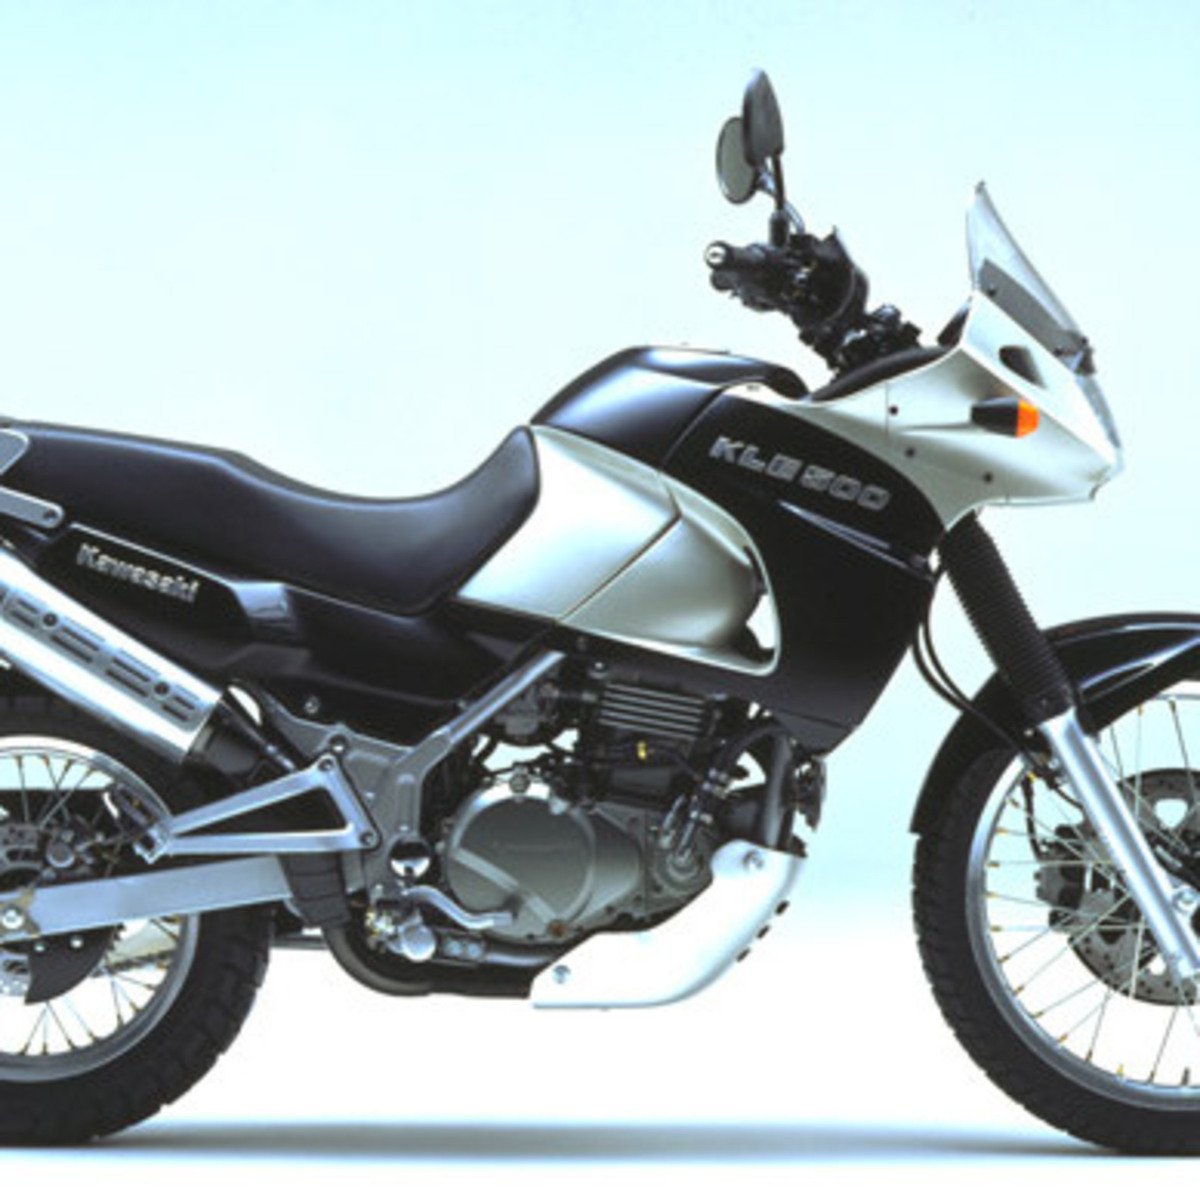 Kawasaki KLE 500 (2001 - 04)